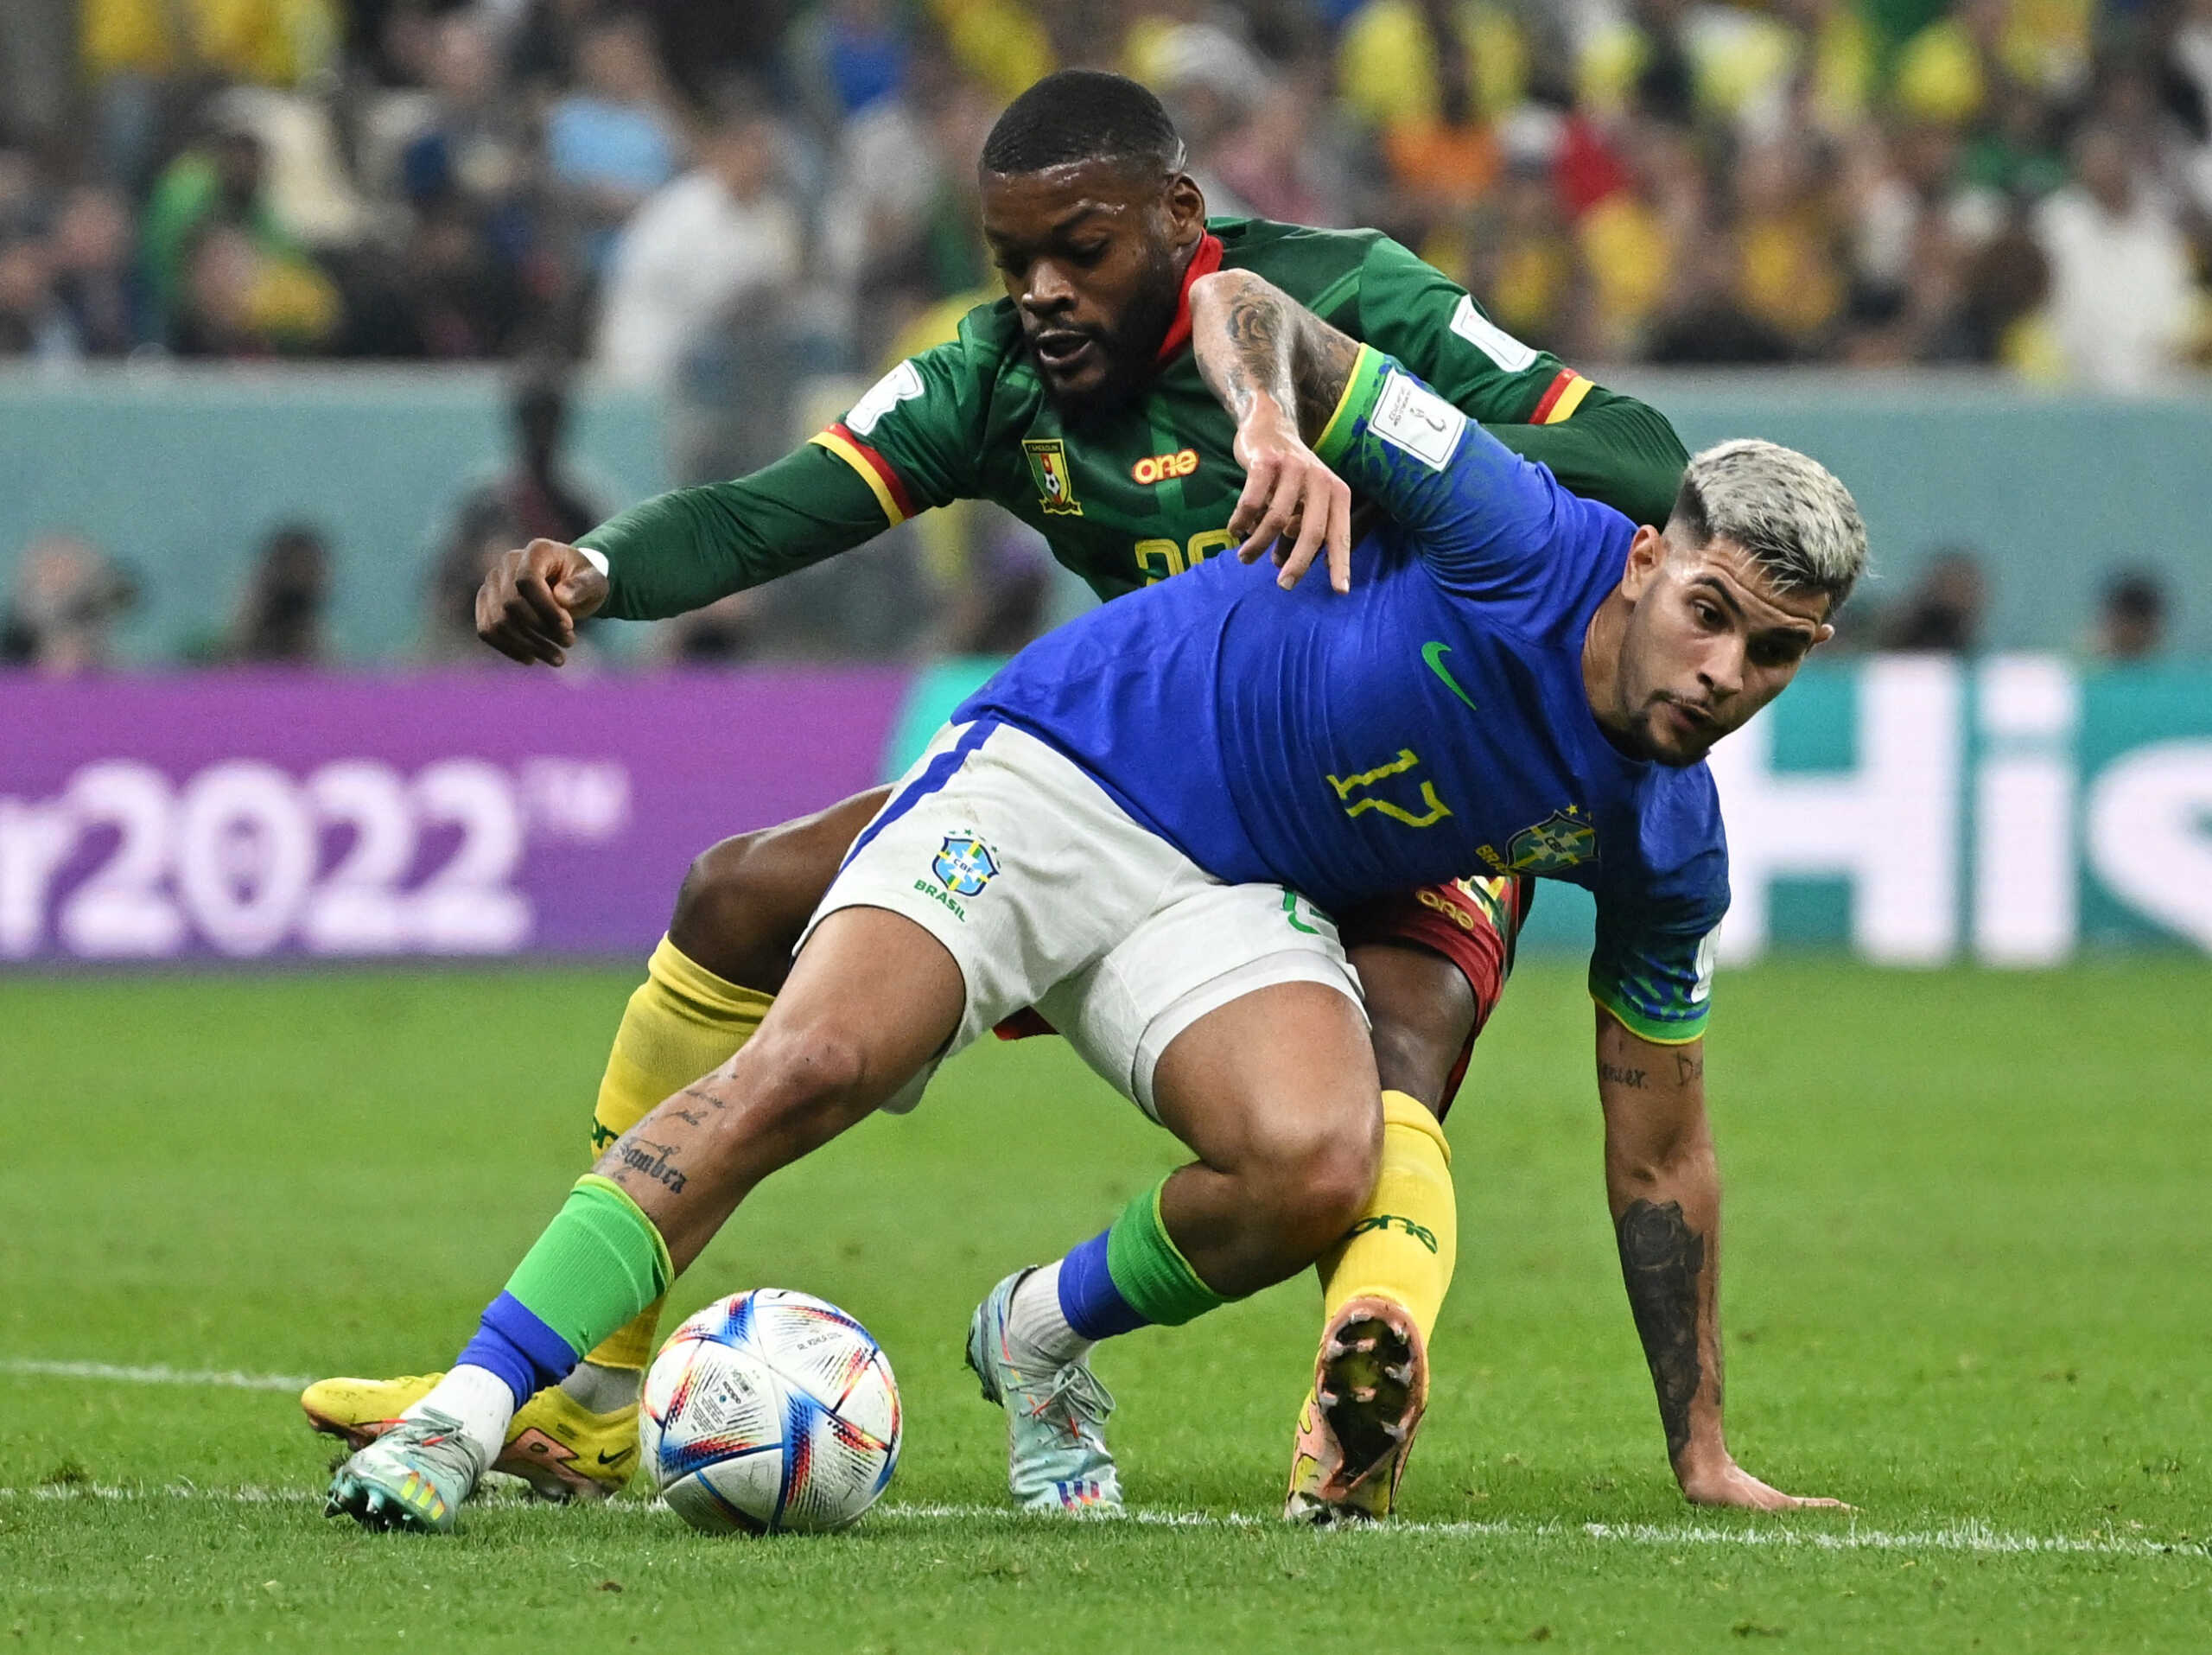 Καμερούν – Βραζιλία 1-0: Πρώτη θέση και πρόκριση παρά την ήττα για τους Βραζιλιάνους στον 7ο όμιλο του Μουντιάλ 2022